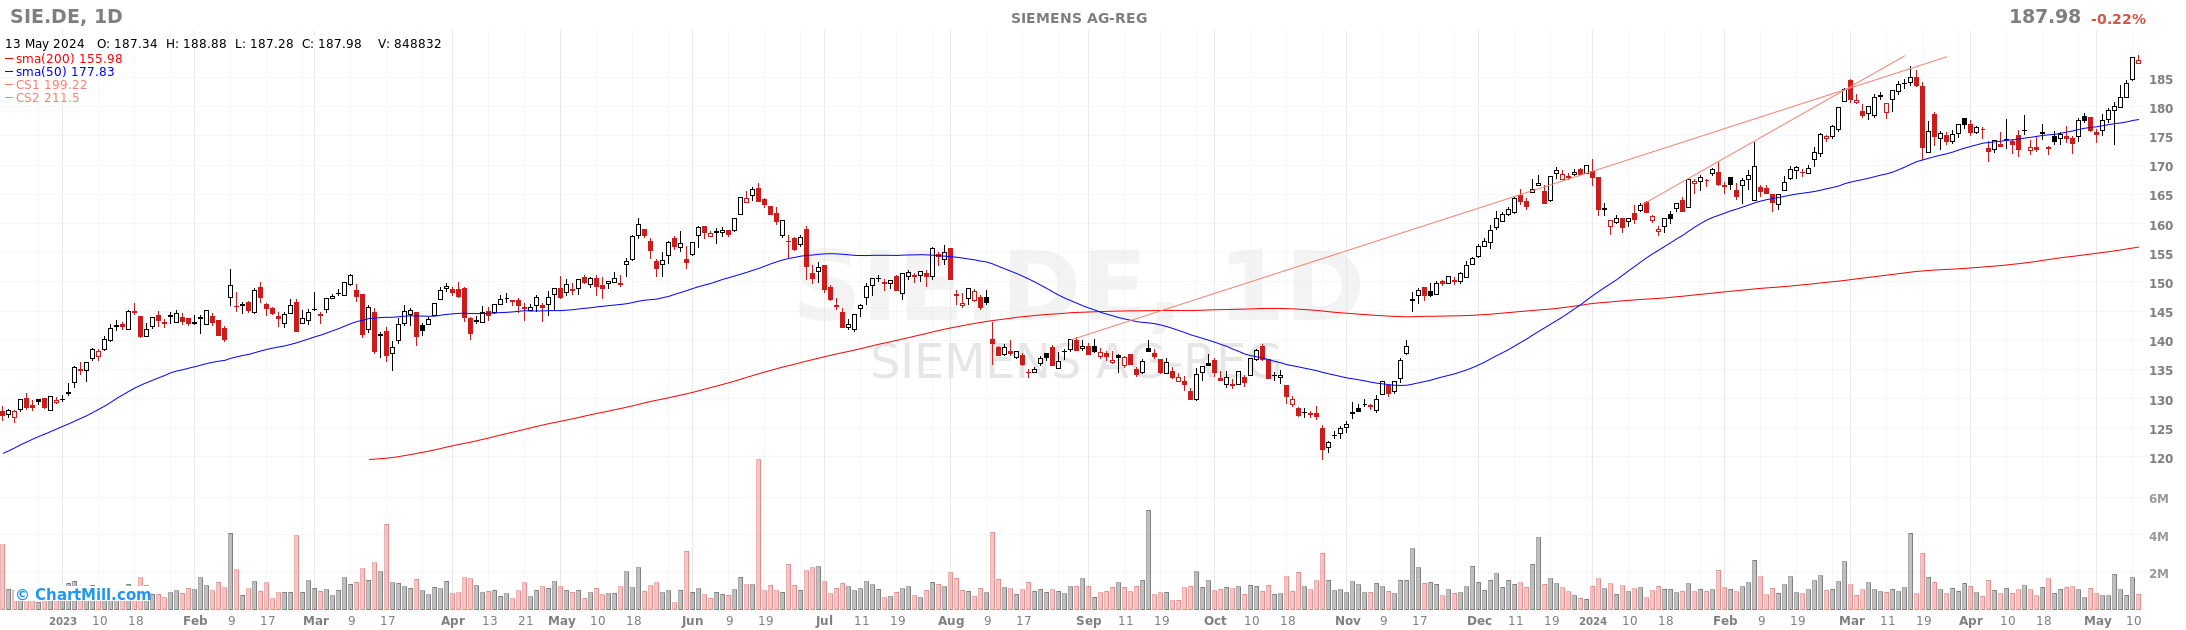 📌Обзор компании Siemens - #SIE@DE